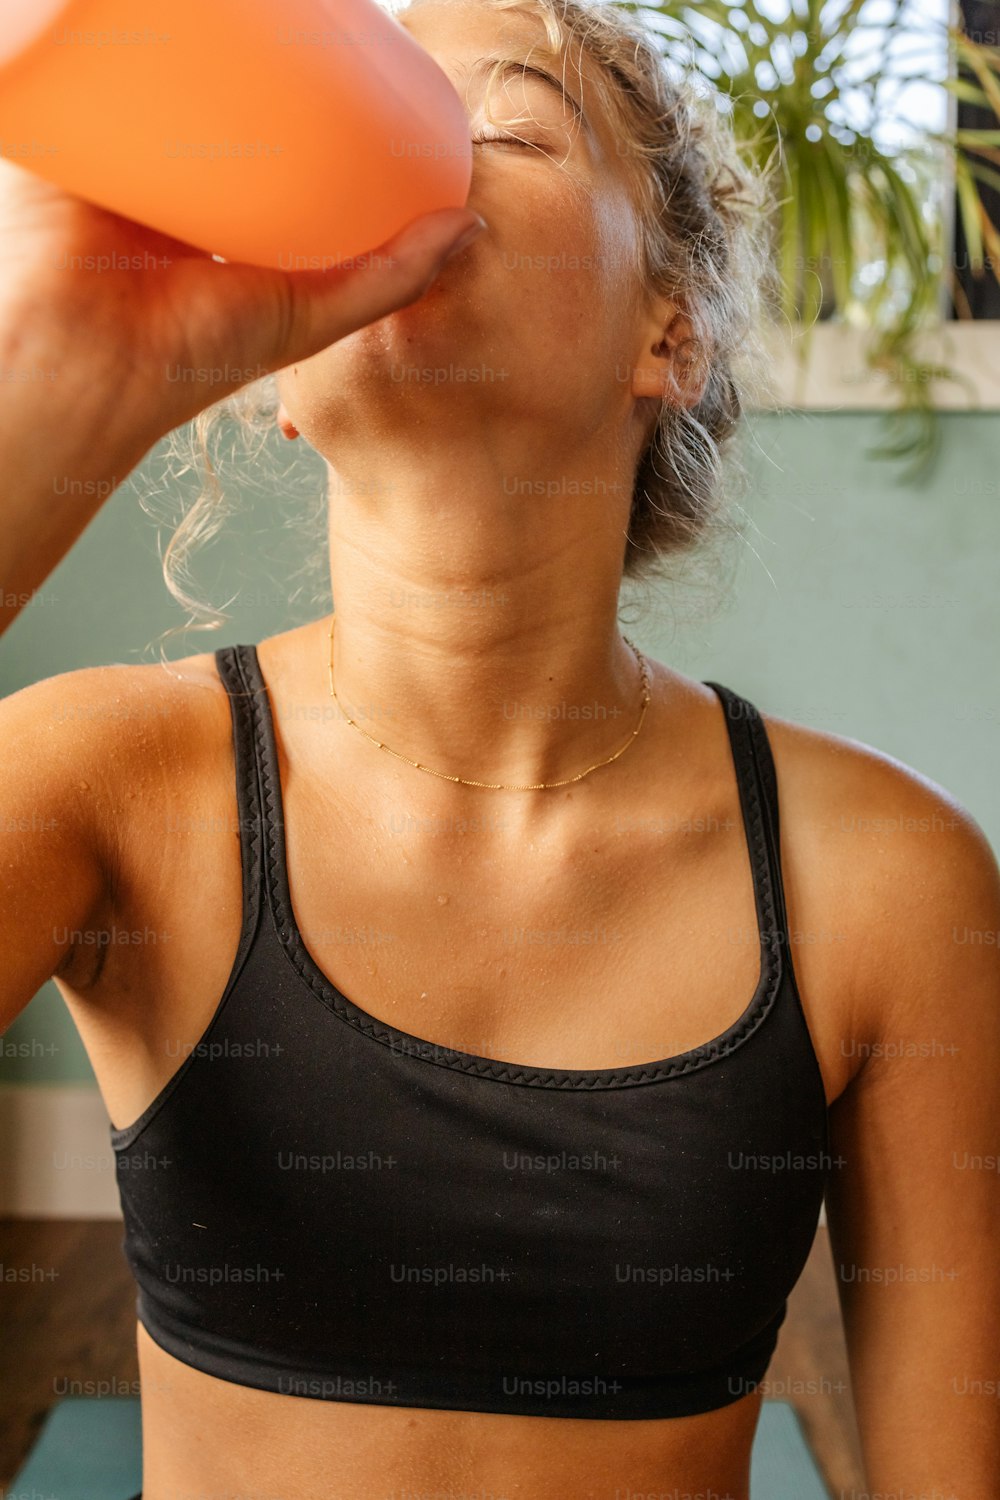 Une femme en soutien-gorge de sport buvant dans une coupe orange